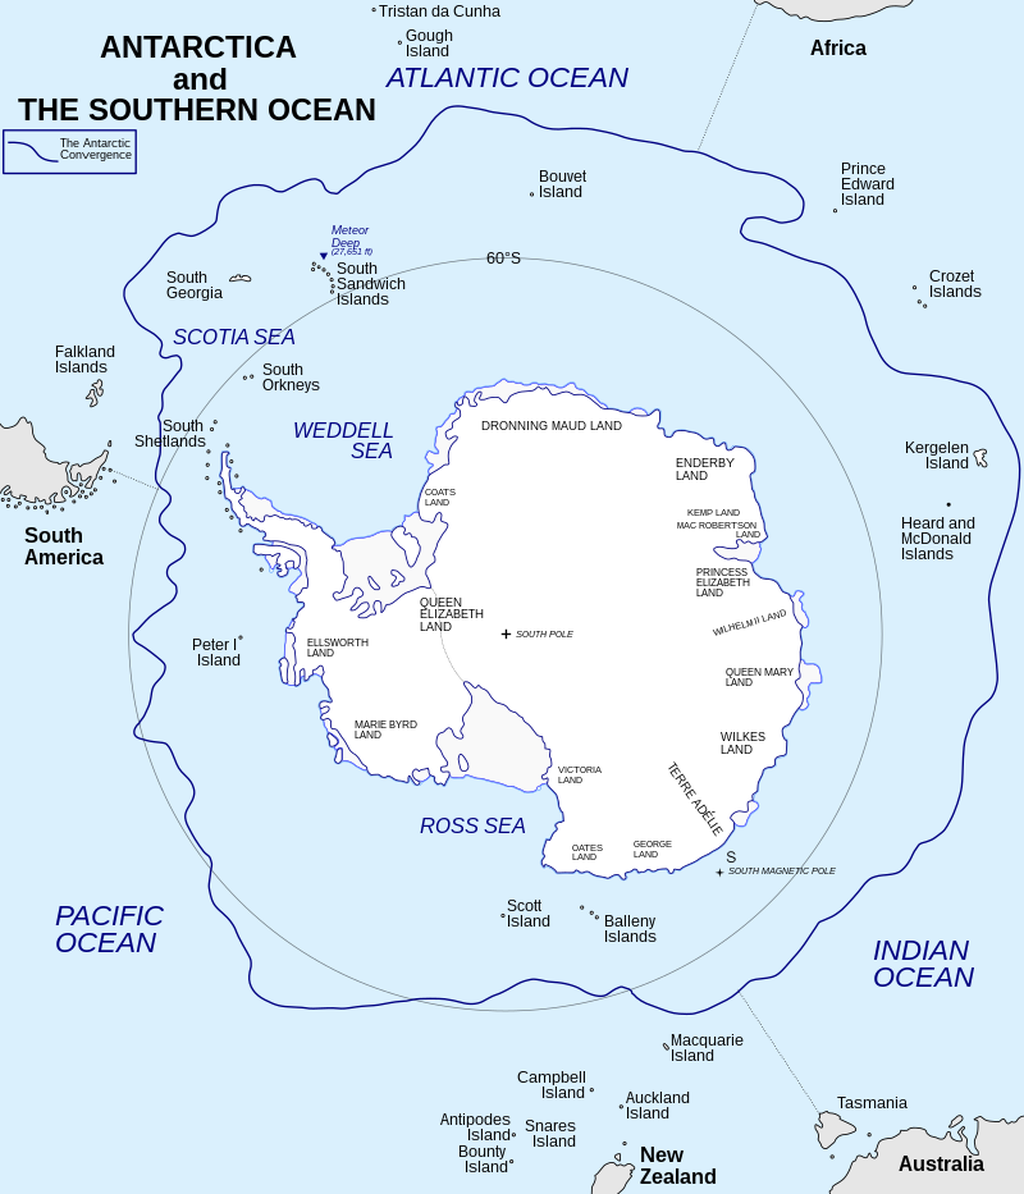 Benua Antarktika dikelilingi oleh sejumlah pulau yang umumnya tidak berpenghuni, salah satunya Pulau Young yang ada di Kepulauan Balleny (bawah). Pulau Young menjadi pulau yang bisa melihat Matahari terbit pertama pada setiap pergantian Tahun Baru.